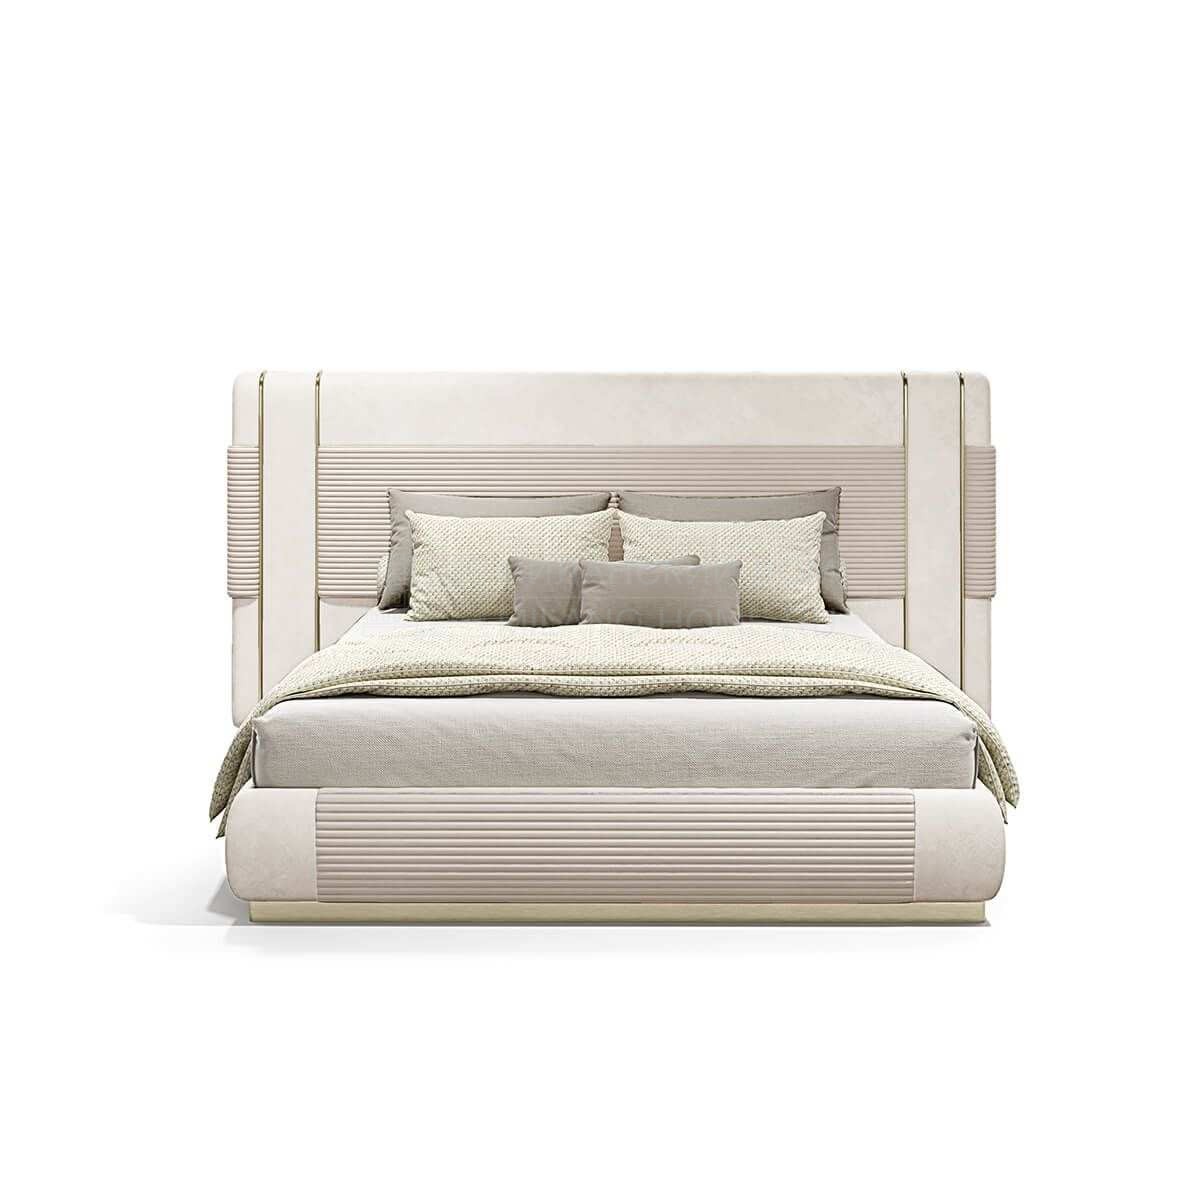 Двуспальная кровать Frey bed из Италии фабрики CAPITAL Collection